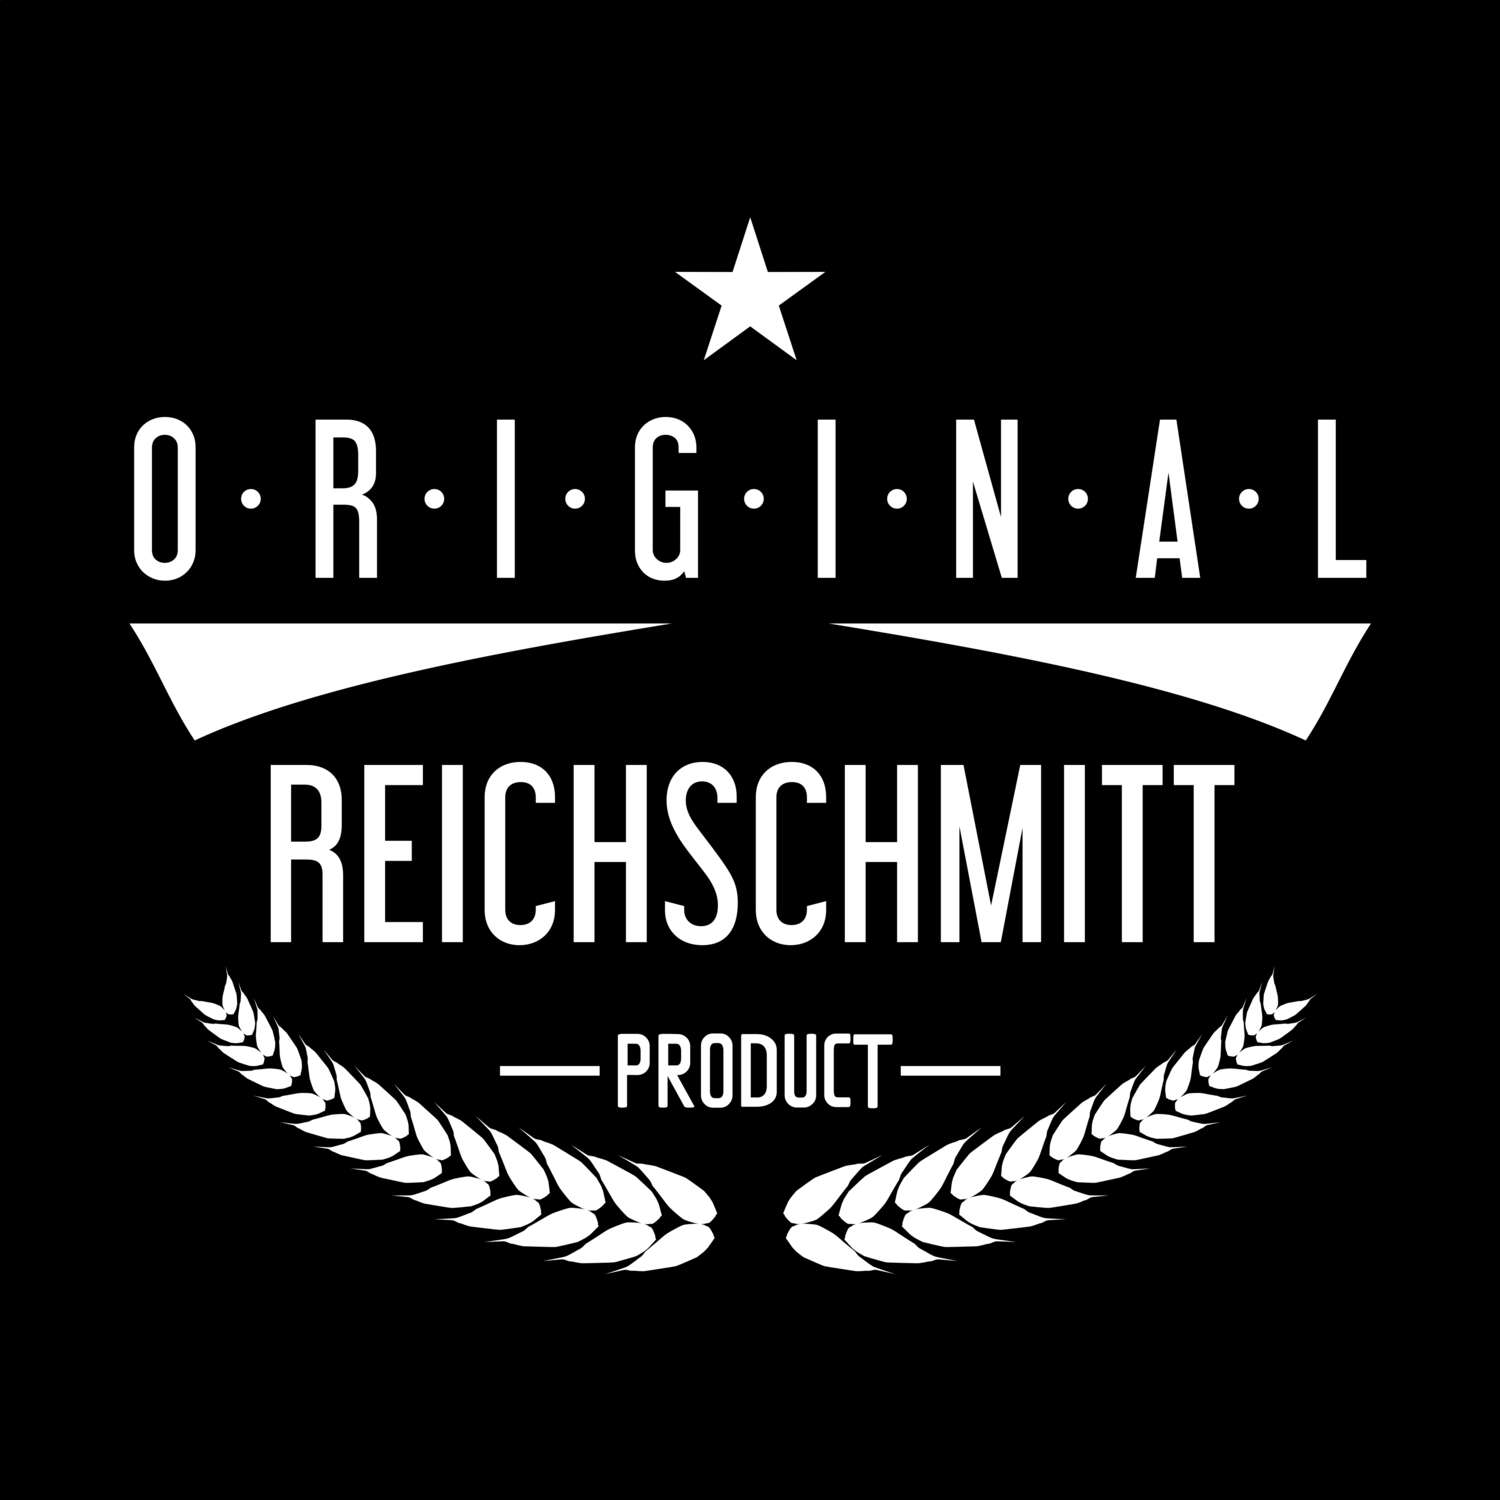 Reichschmitt T-Shirt »Original Product«